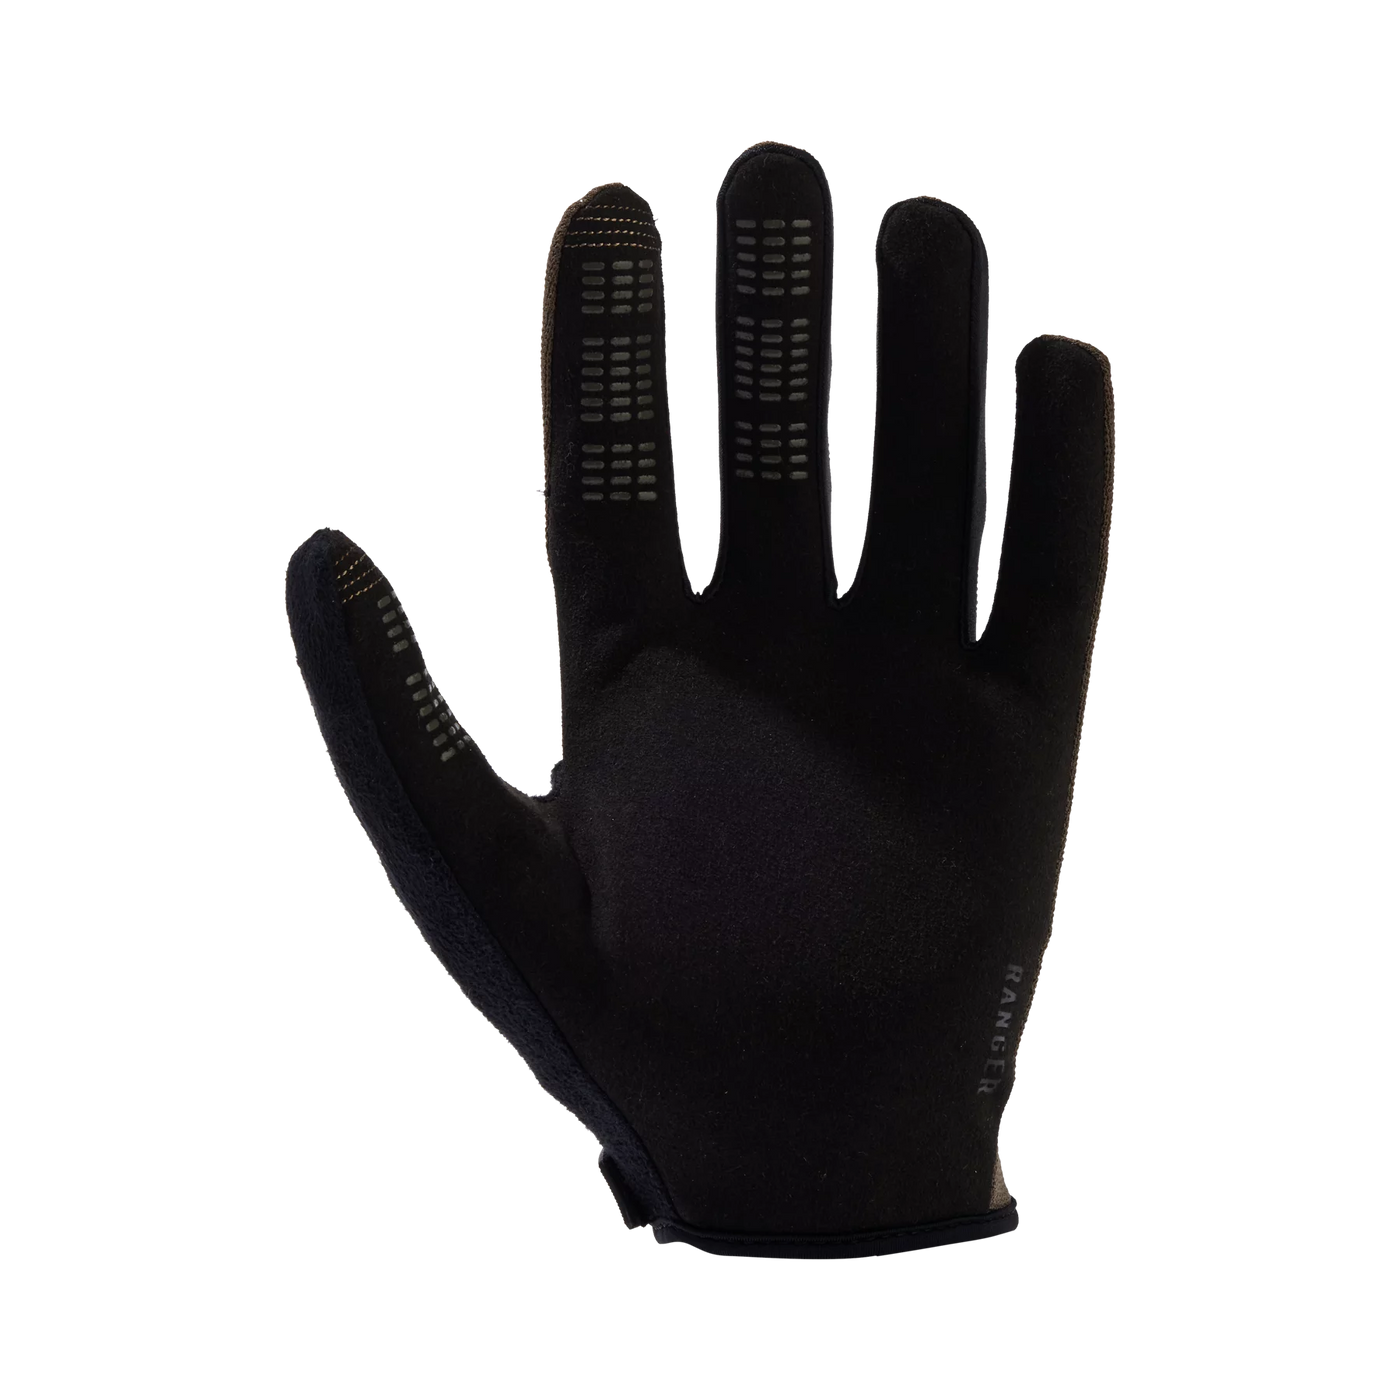 Ranger MTB Gloves